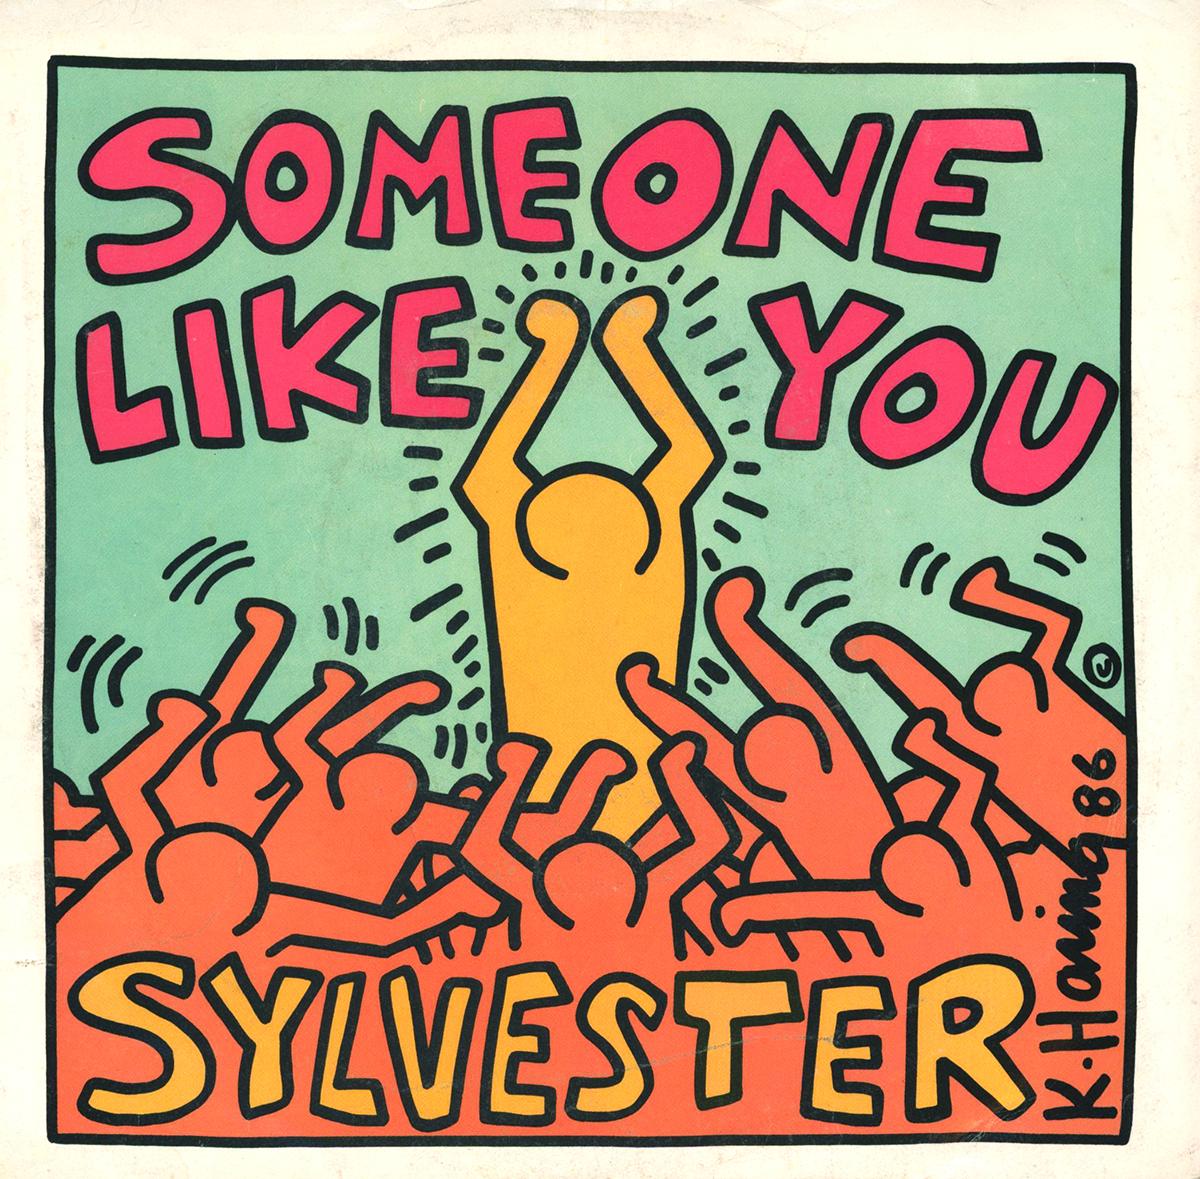 Vintage Vinyl Record Art von Keith Haring mit leuchtenden, satten Farben, die für auffällige Wandkunst in Reichweite sorgen:

Jahr: 1986 
Off-Set Lithographie auf Plattenhülle, Vinyl-Schallplatte.
Abmessungen: 7 x 7 Zoll 
Einband: Kräftige Farben;